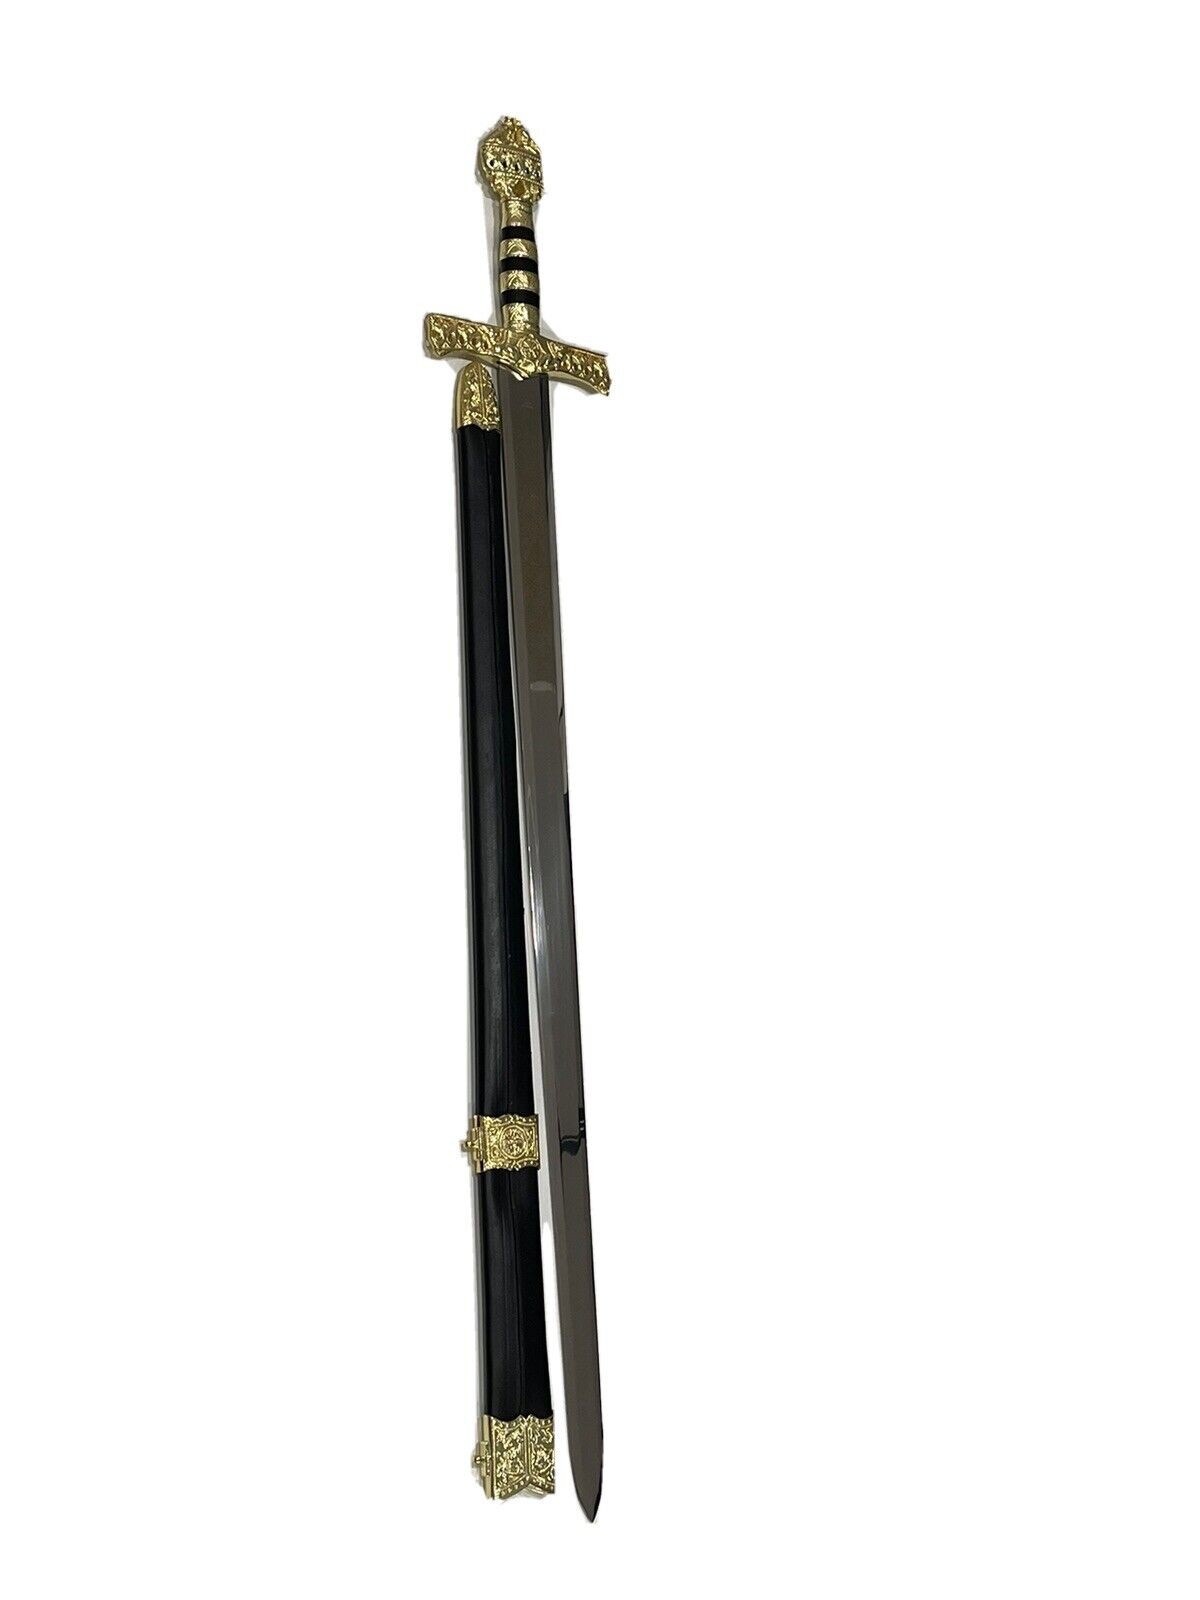 Emperor Frederick | Barbarossa Sword